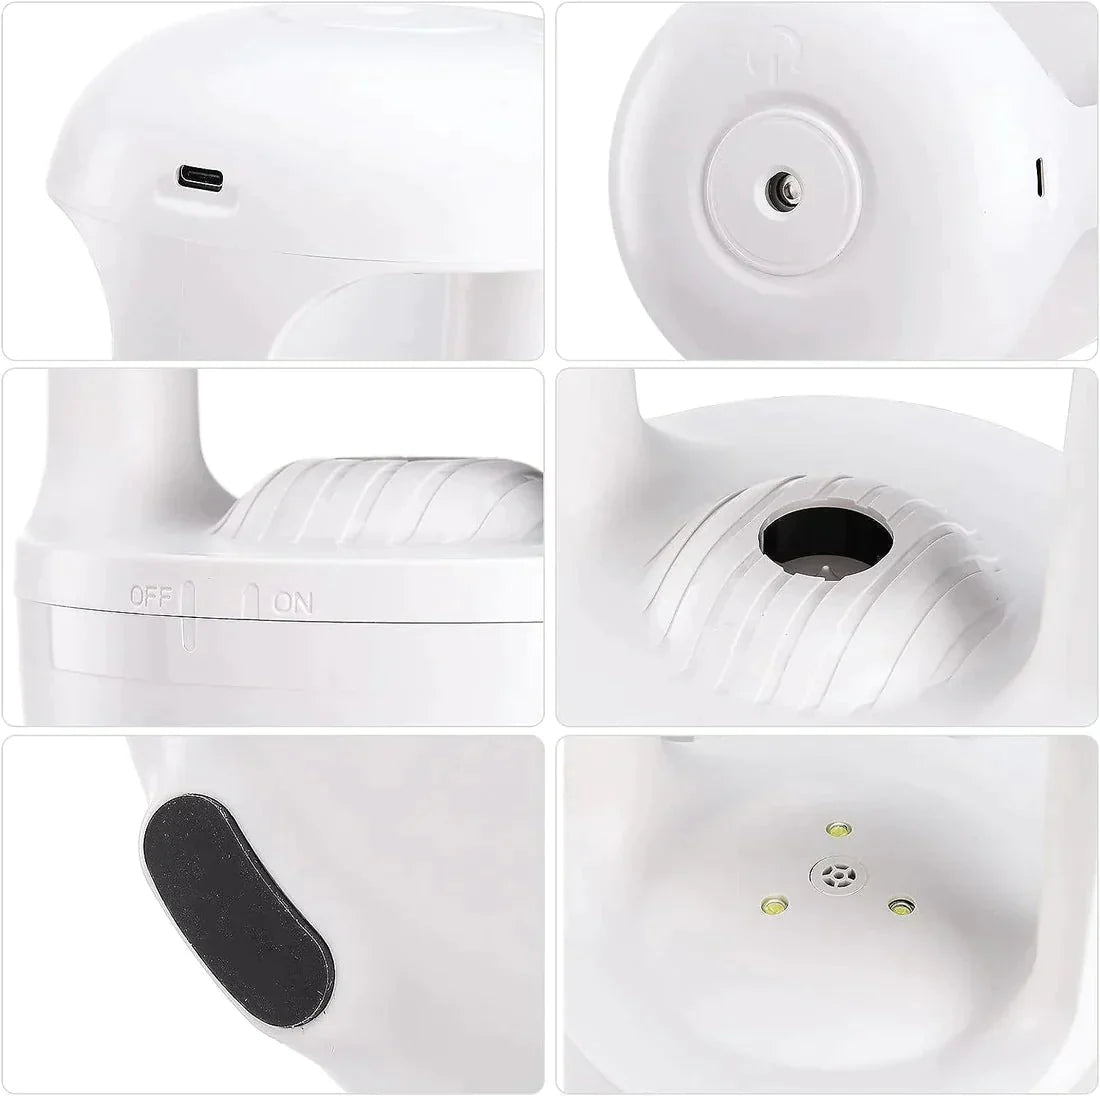 Anti Gravity Humidifier - Ksa Marts